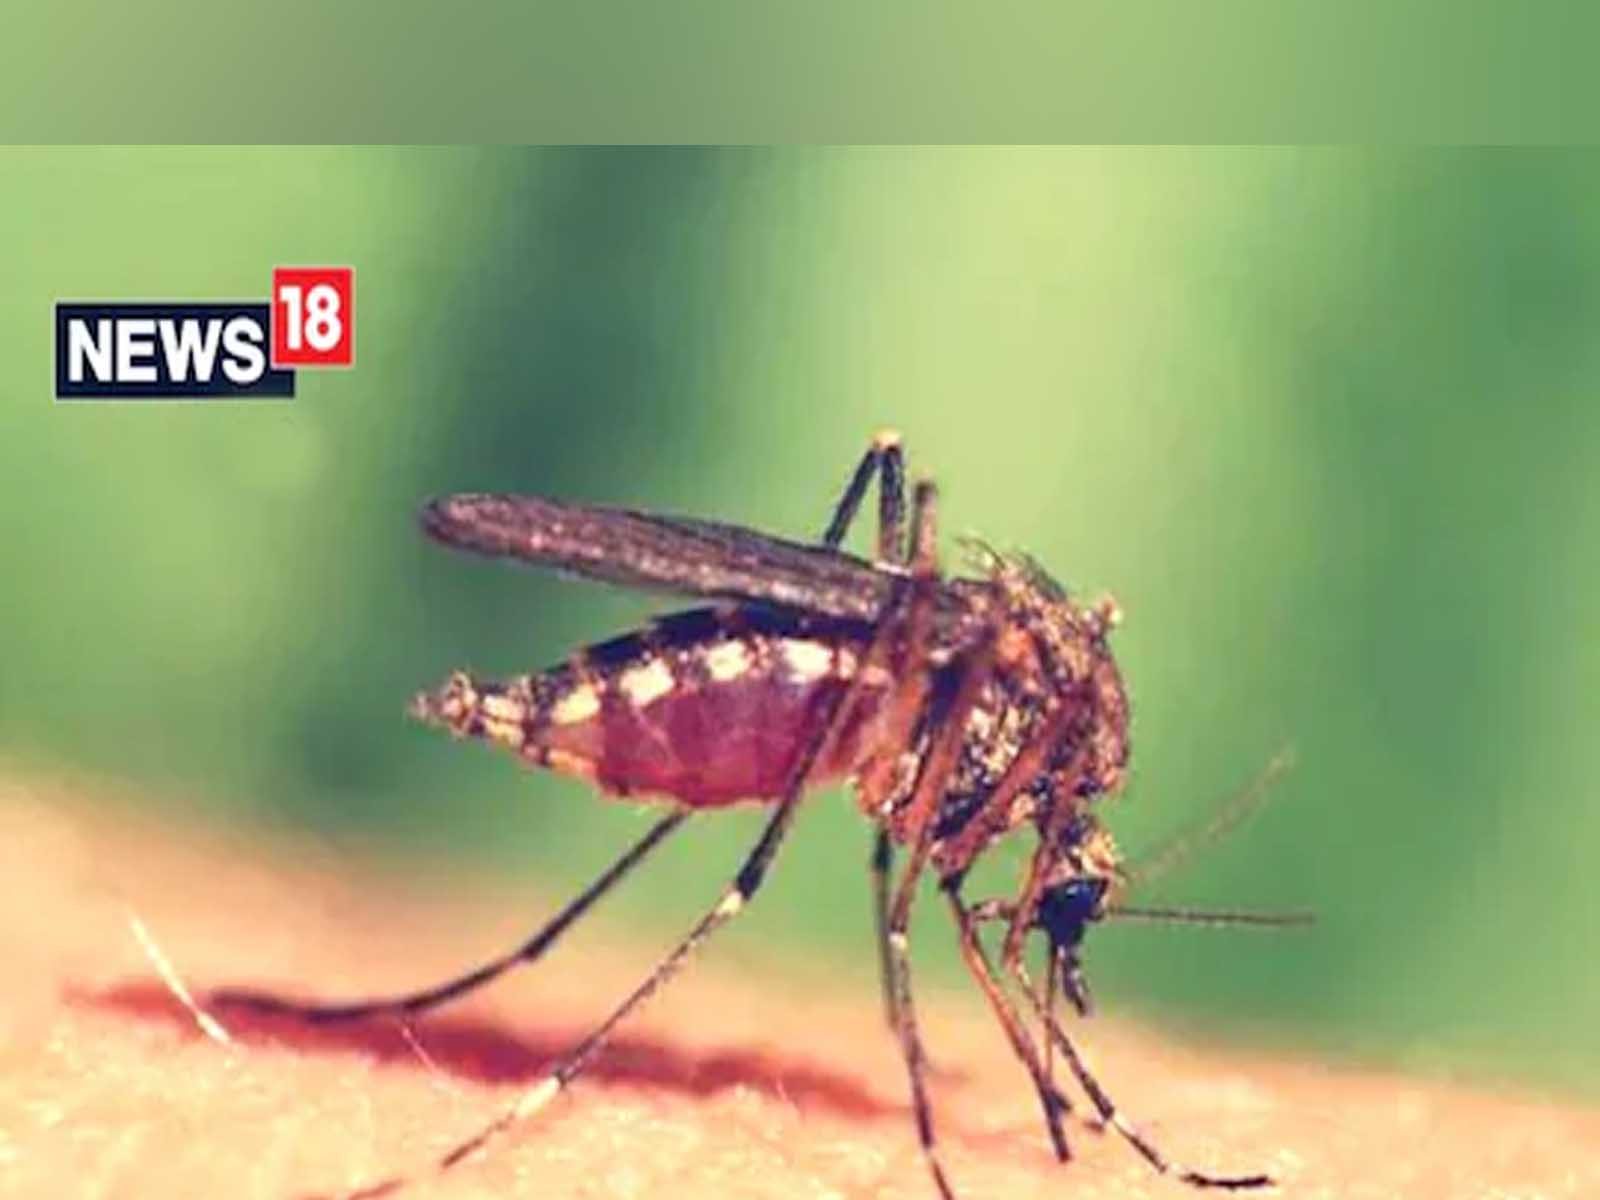 World Mosquito Day 2022: ਮੱਛਰਾਂ ਦੇ ਕੱਟਣ ਨਾਲ ਹਰ ਸਾਲ ਲੱਖਾਂ ਲੋਕ ਗਵਾ ਲੈਂਦੇ ਹਨ ਜਾਨ, ਬਚਾਅ ਲਈ ਅਪਣਾਓ ਇਹ ਤਰੀਕੇ 